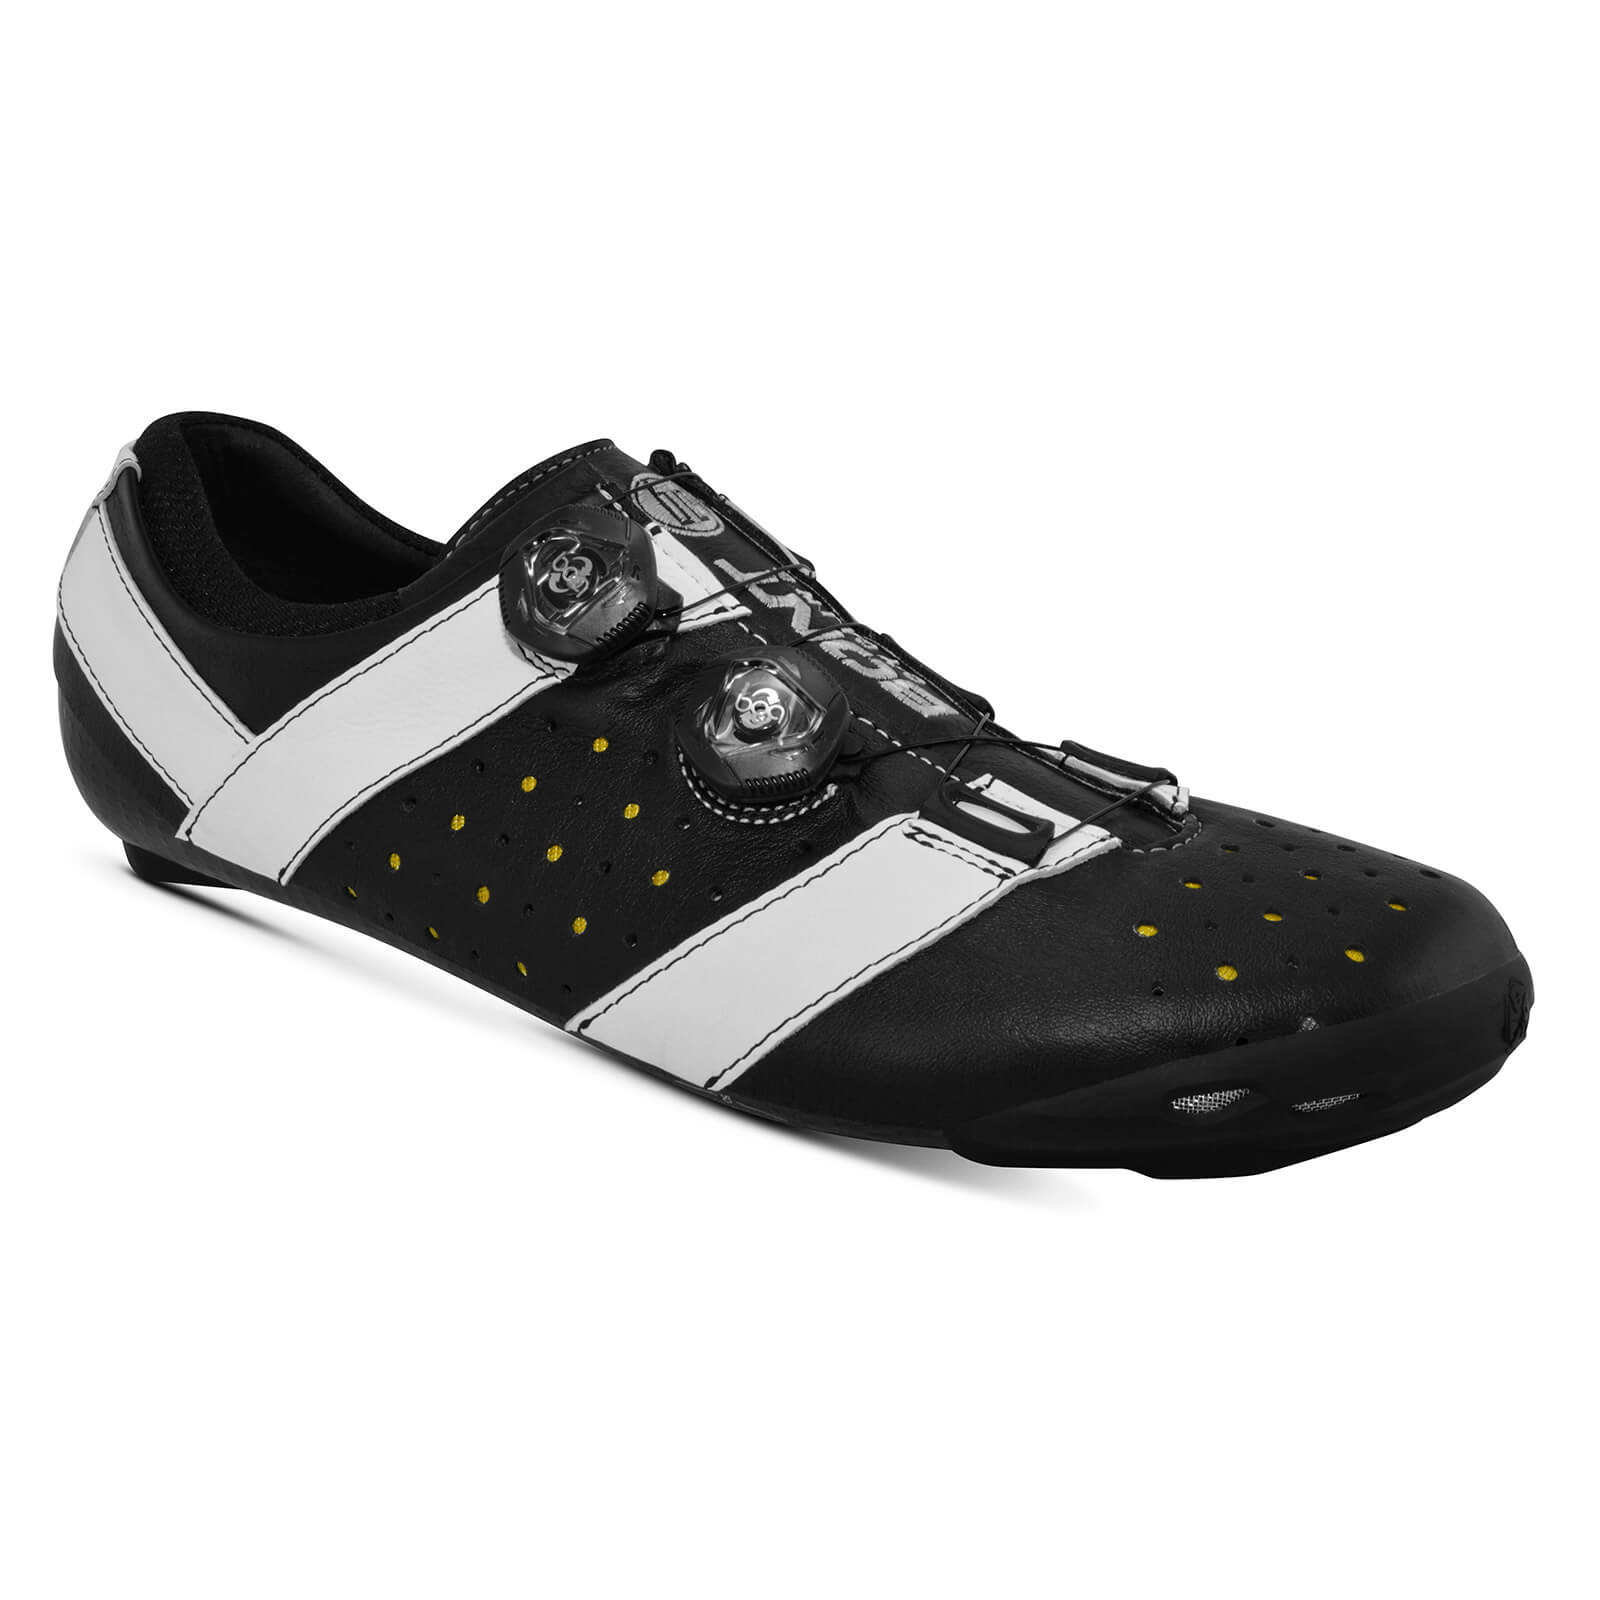 Bont Vaypor + Road Shoes - EU 46.5 - Normal Fit - Black/White